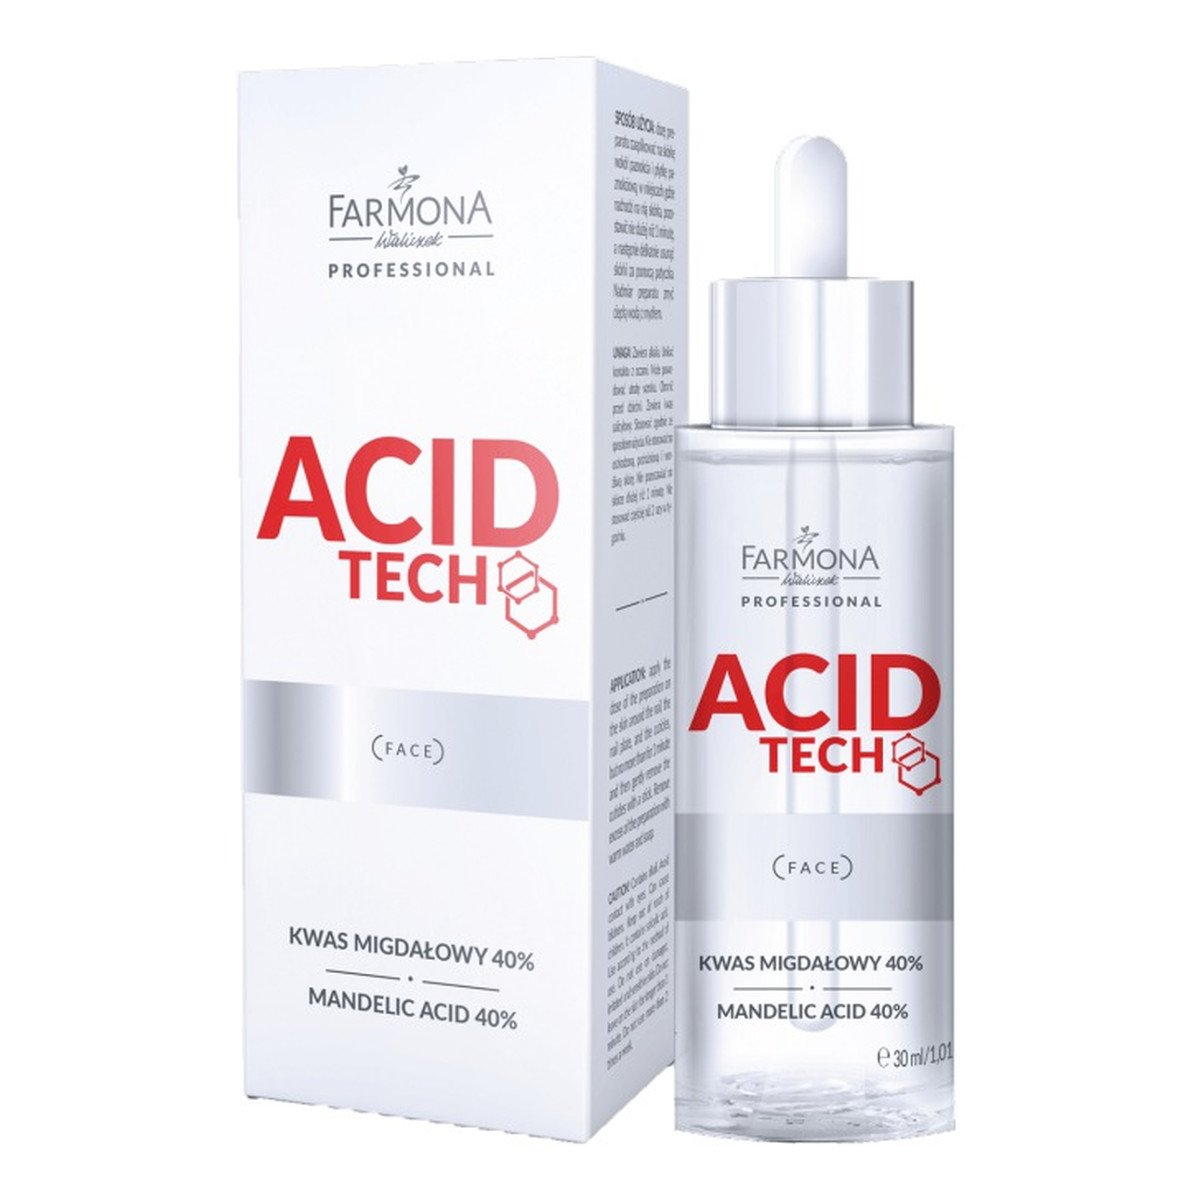 Farmona Professional Acid Tech kwas migdałowy 40% 30ml